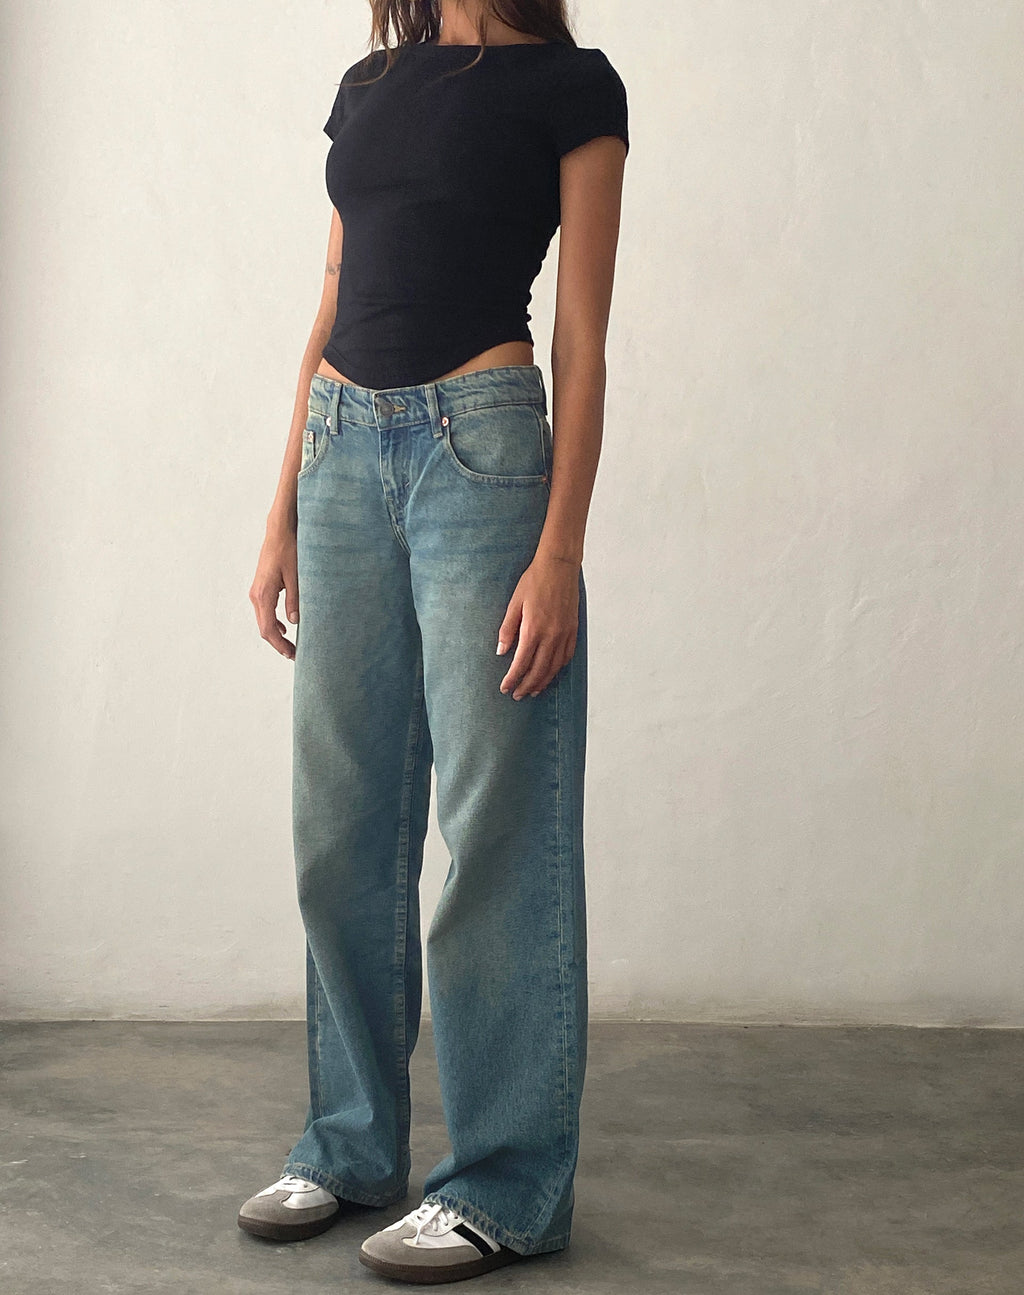 Low Rise Parallel Jeans in Vintage Blauwgroen